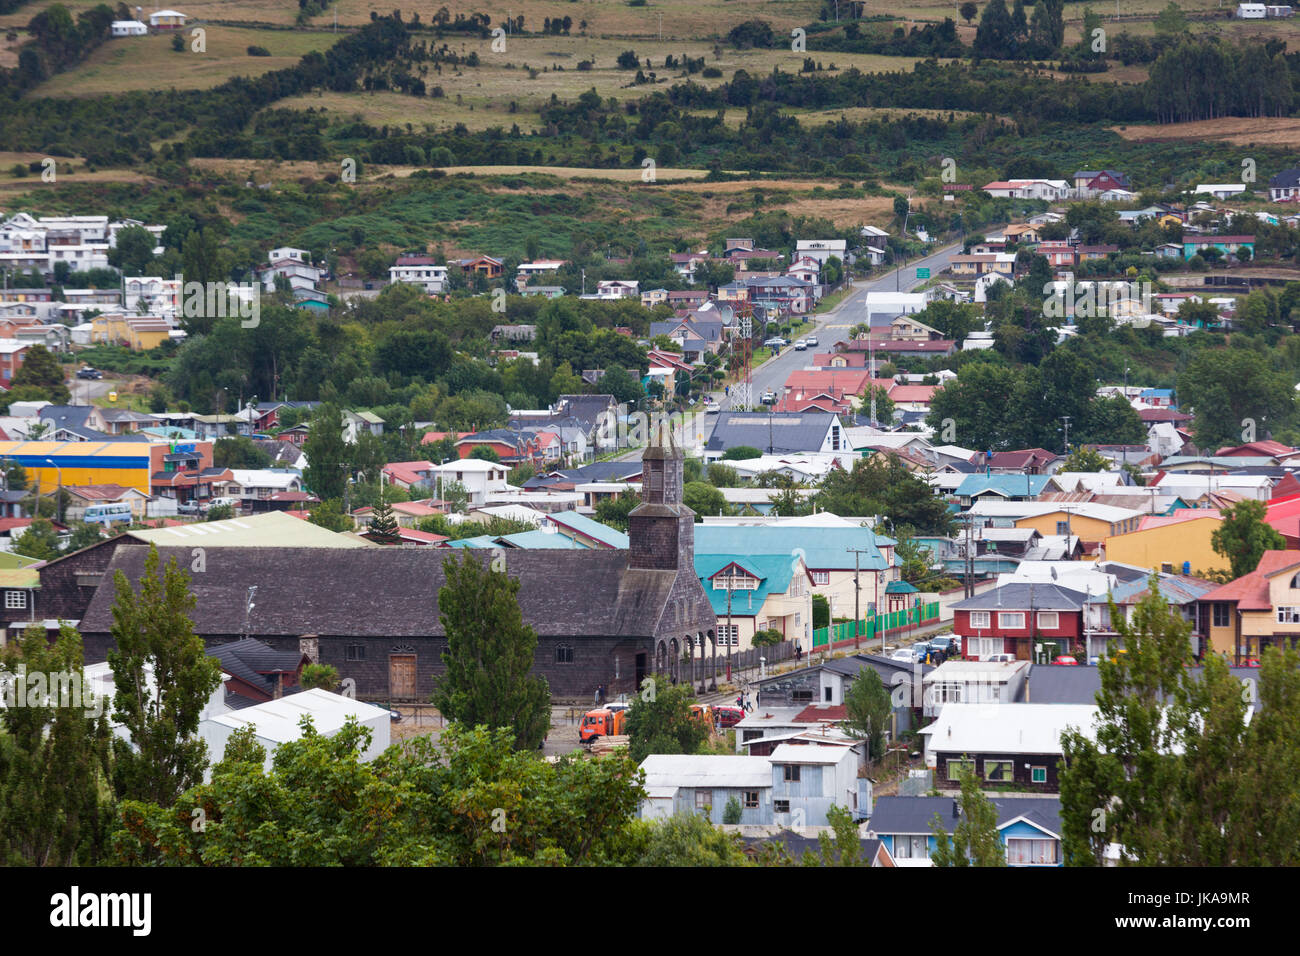 Chile, Chiloe Archipelago, Quinchao Island, Achao, elevated town view with Iglesia Santa Maria de Loreto church Stock Photo